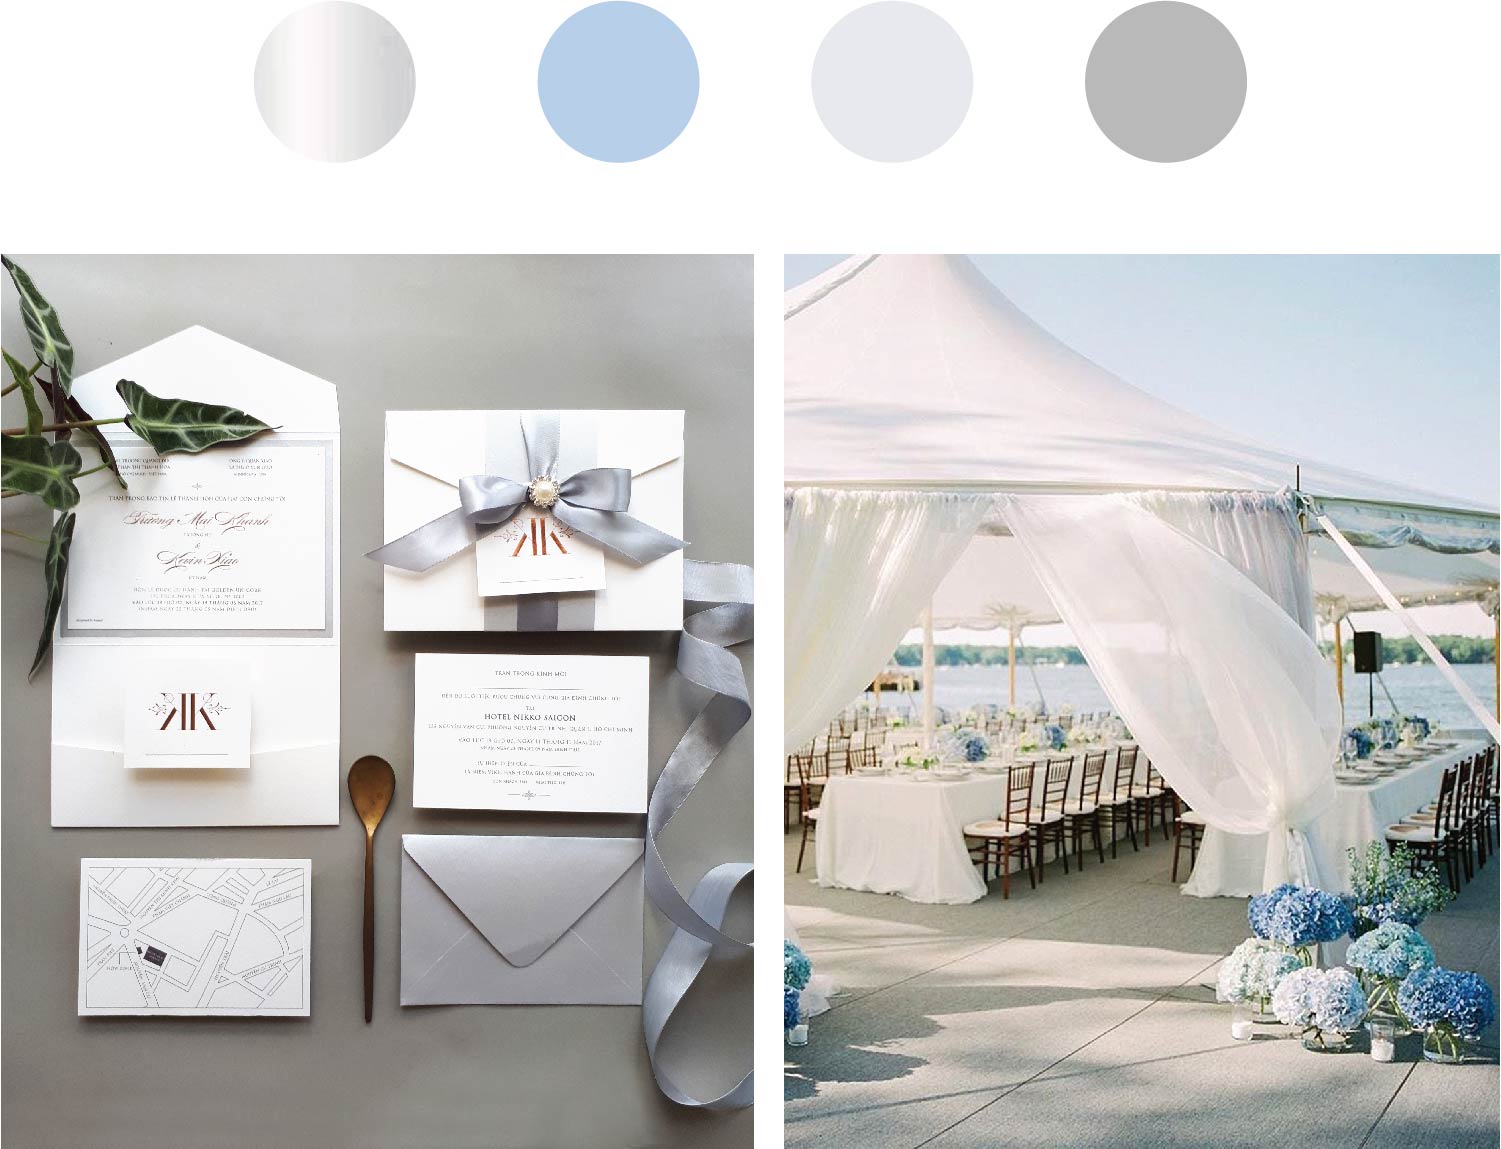 Ảnh trái: Traqué Wedding Paper - Ảnh phải: Pinterest